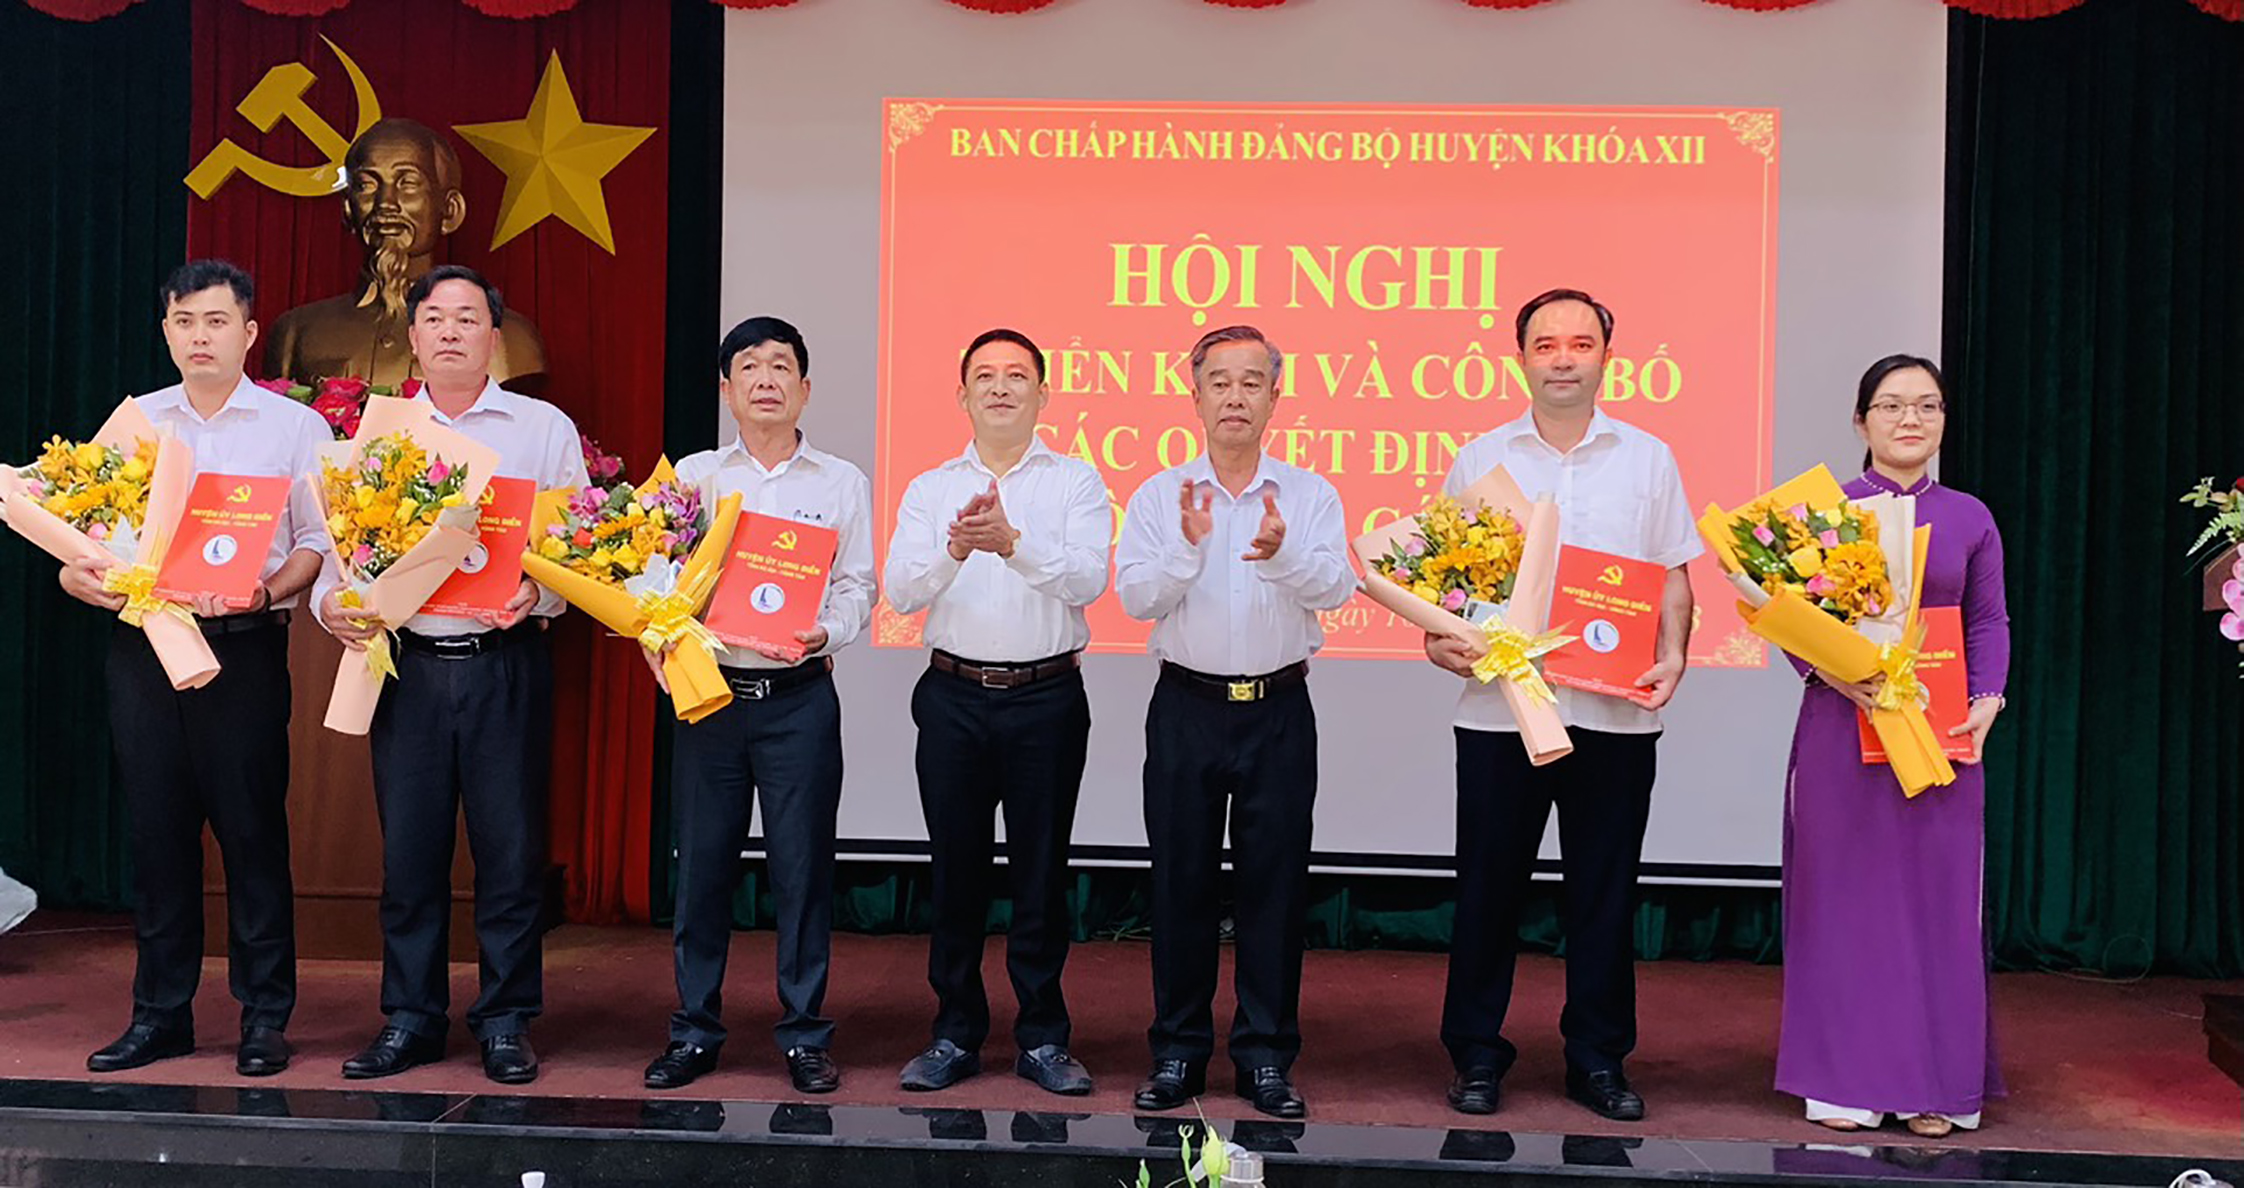 Ông Huỳnh Sơn Tuấn, Bí thư Huyện ủy và ông Võ Hữu Hạnh, Phó Bí thư Huyện ủy Long Điền trao quyết định và tặng hoa chúc mừng cho các cán bộ được điều động, bổ nhiệm.